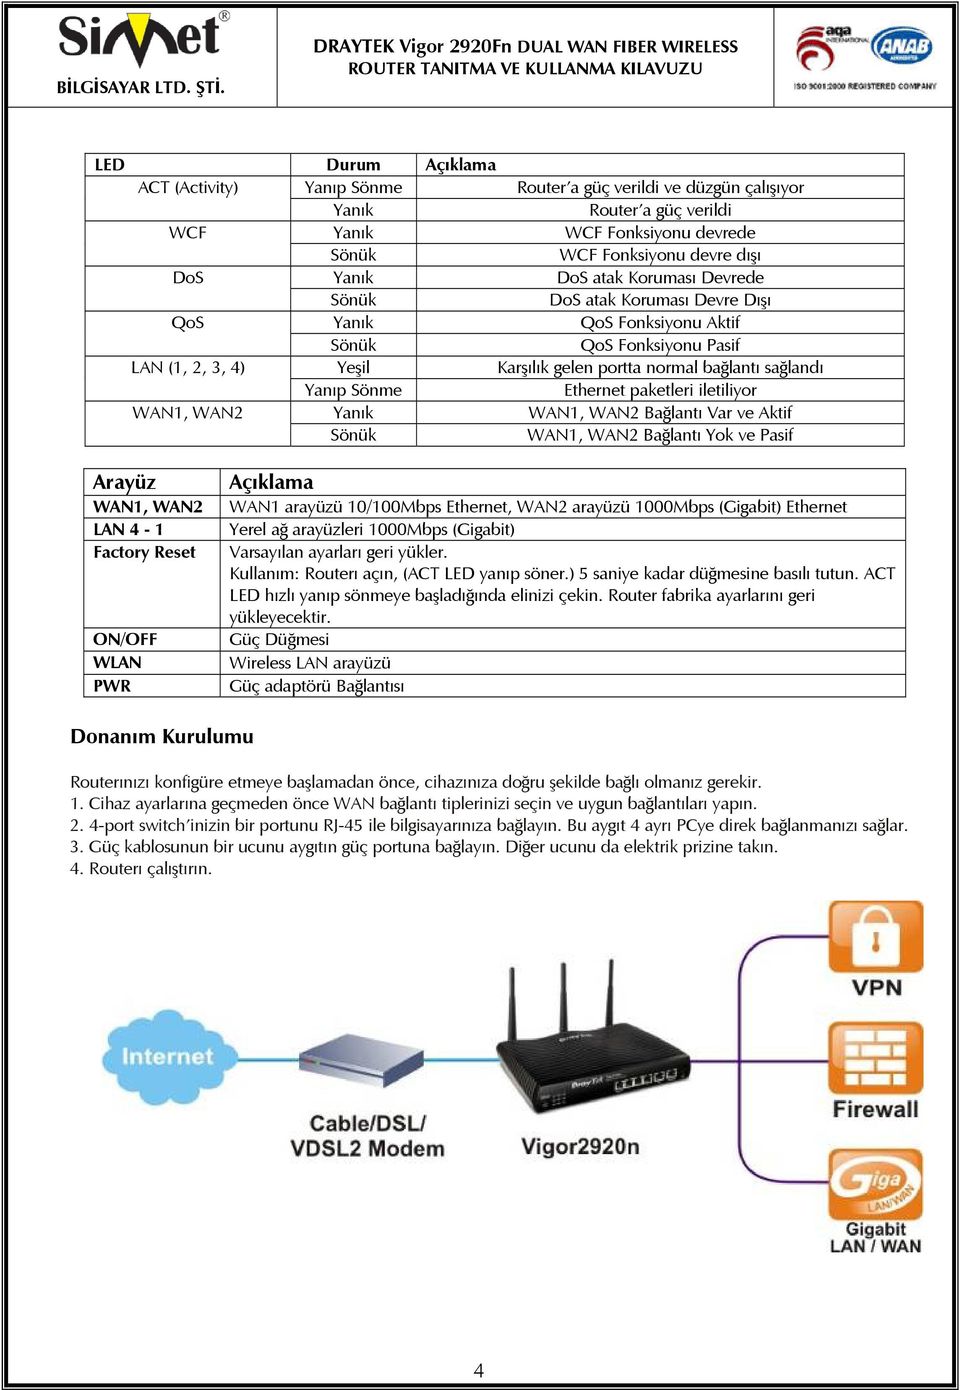 Ethernet paketleri iletiliyor WAN1, WAN2 Yanık WAN1, WAN2 Bağlantı Var ve Aktif Sönük WAN1, WAN2 Bağlantı Yok ve Pasif Arayüz WAN1, WAN2 LAN 4-1 Factory Reset ON/OFF WLAN PWR Açıklama WAN1 arayüzü